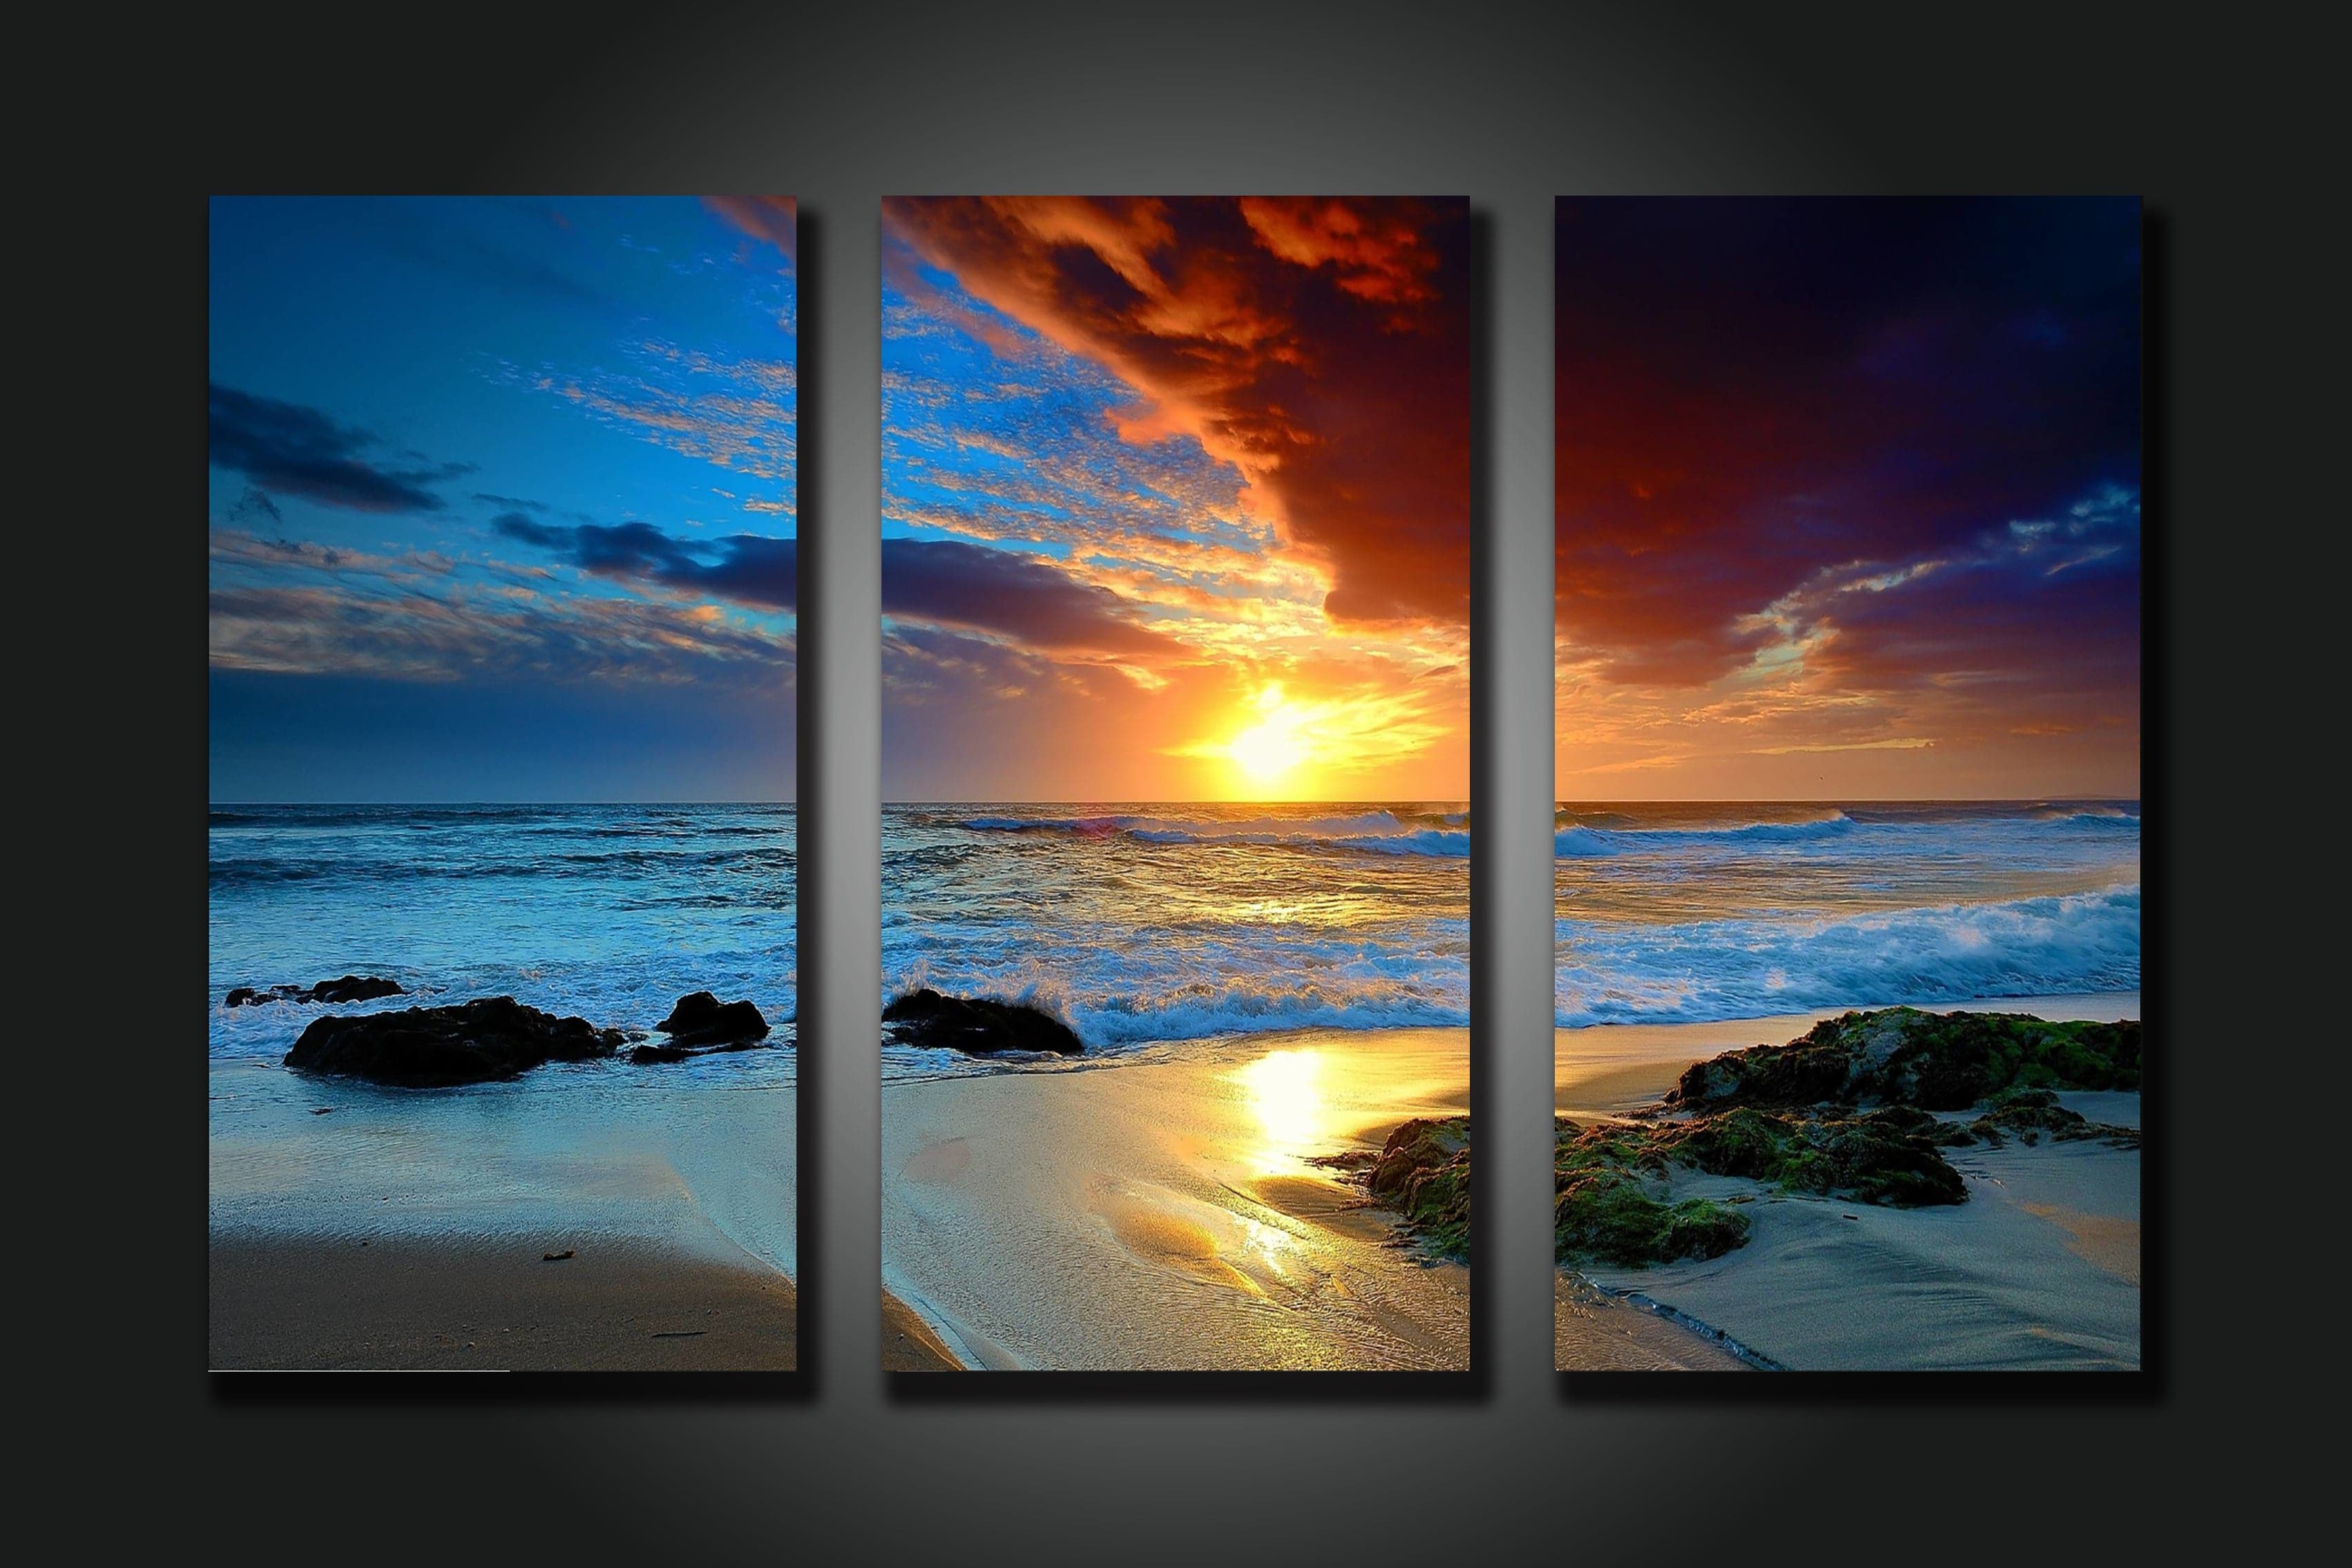 Framed 3 Panels - Sunset on the beach